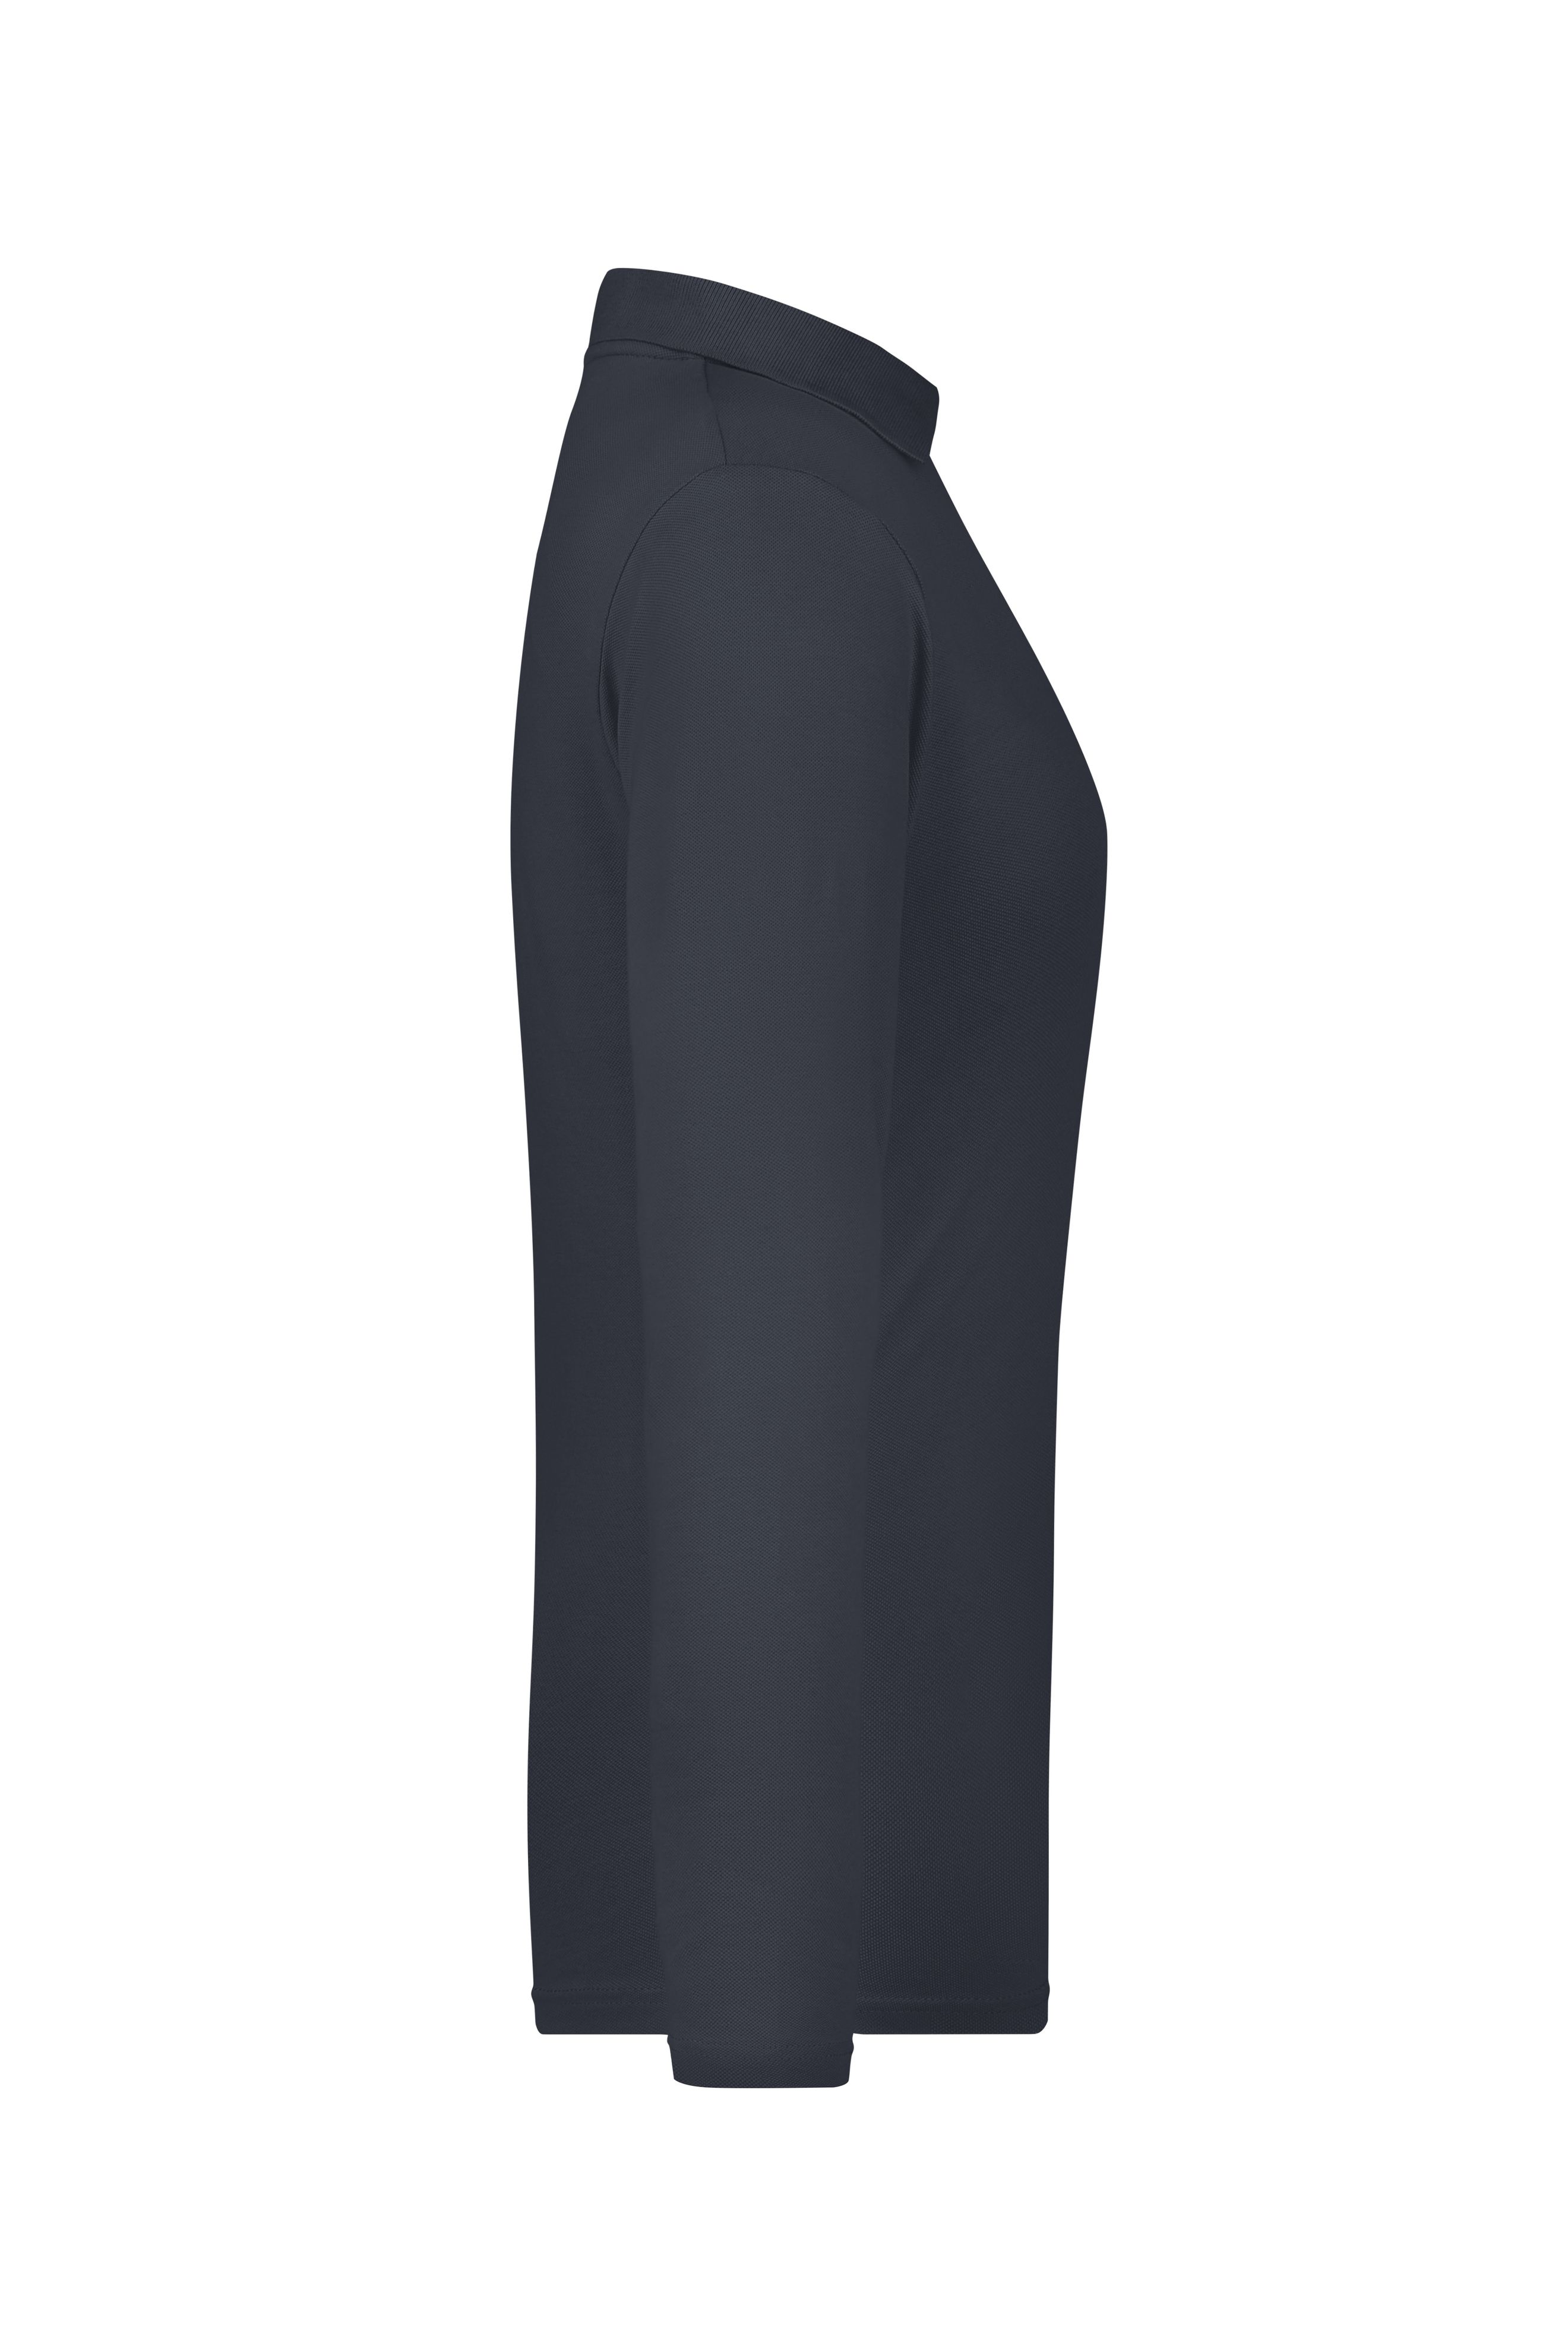 Ladies' Elastic Polo Long-Sleeved JN180 Langarm Poloshirt mit hohem Tragekomfort